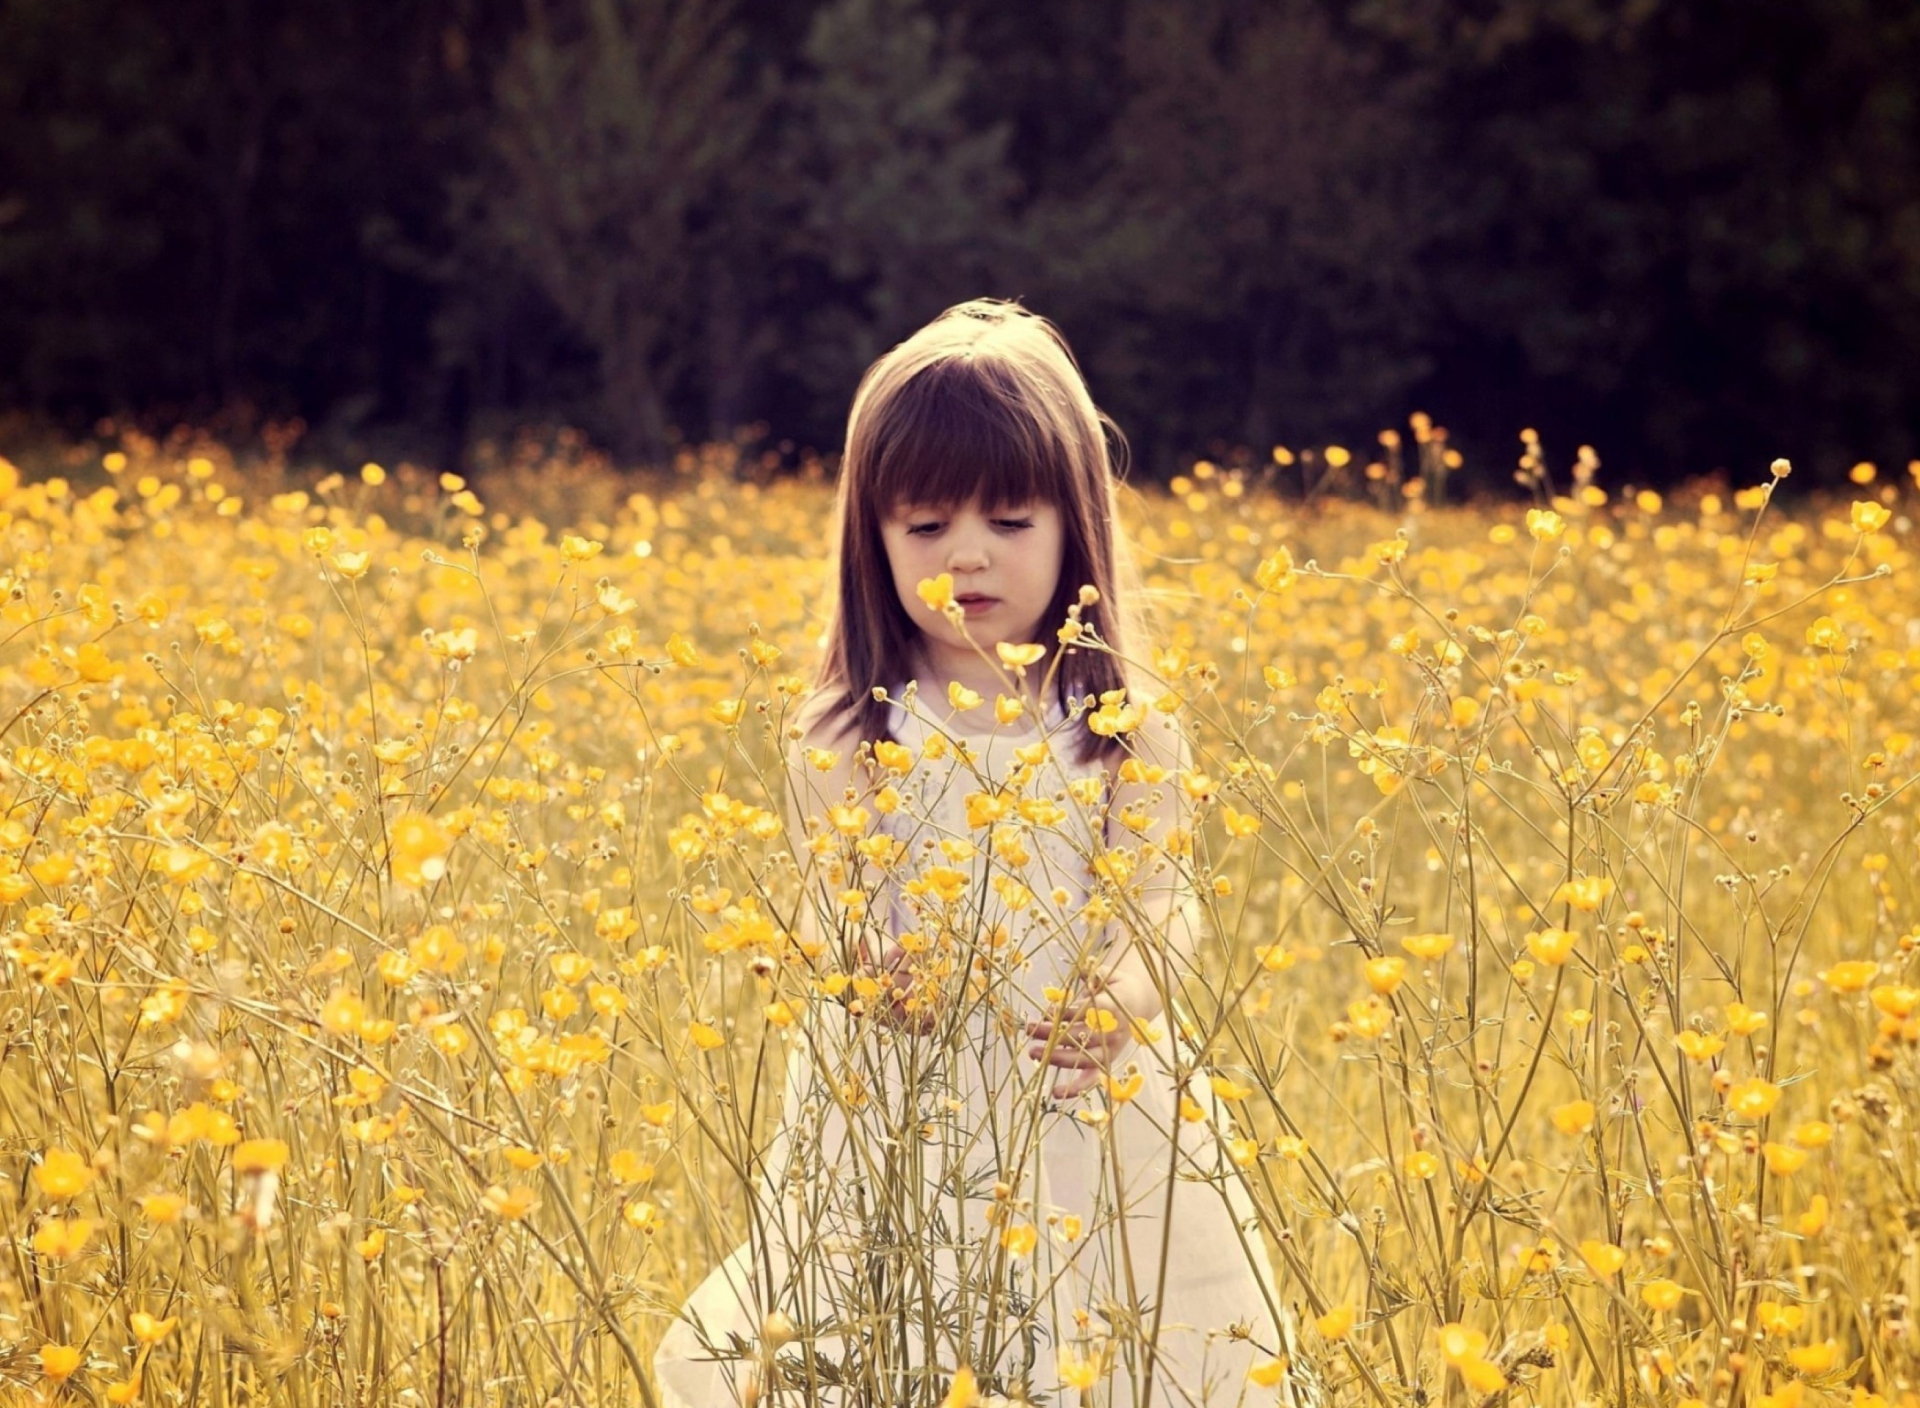 Das Cute Little Girl In Flower Field Wallpaper 1920x1408